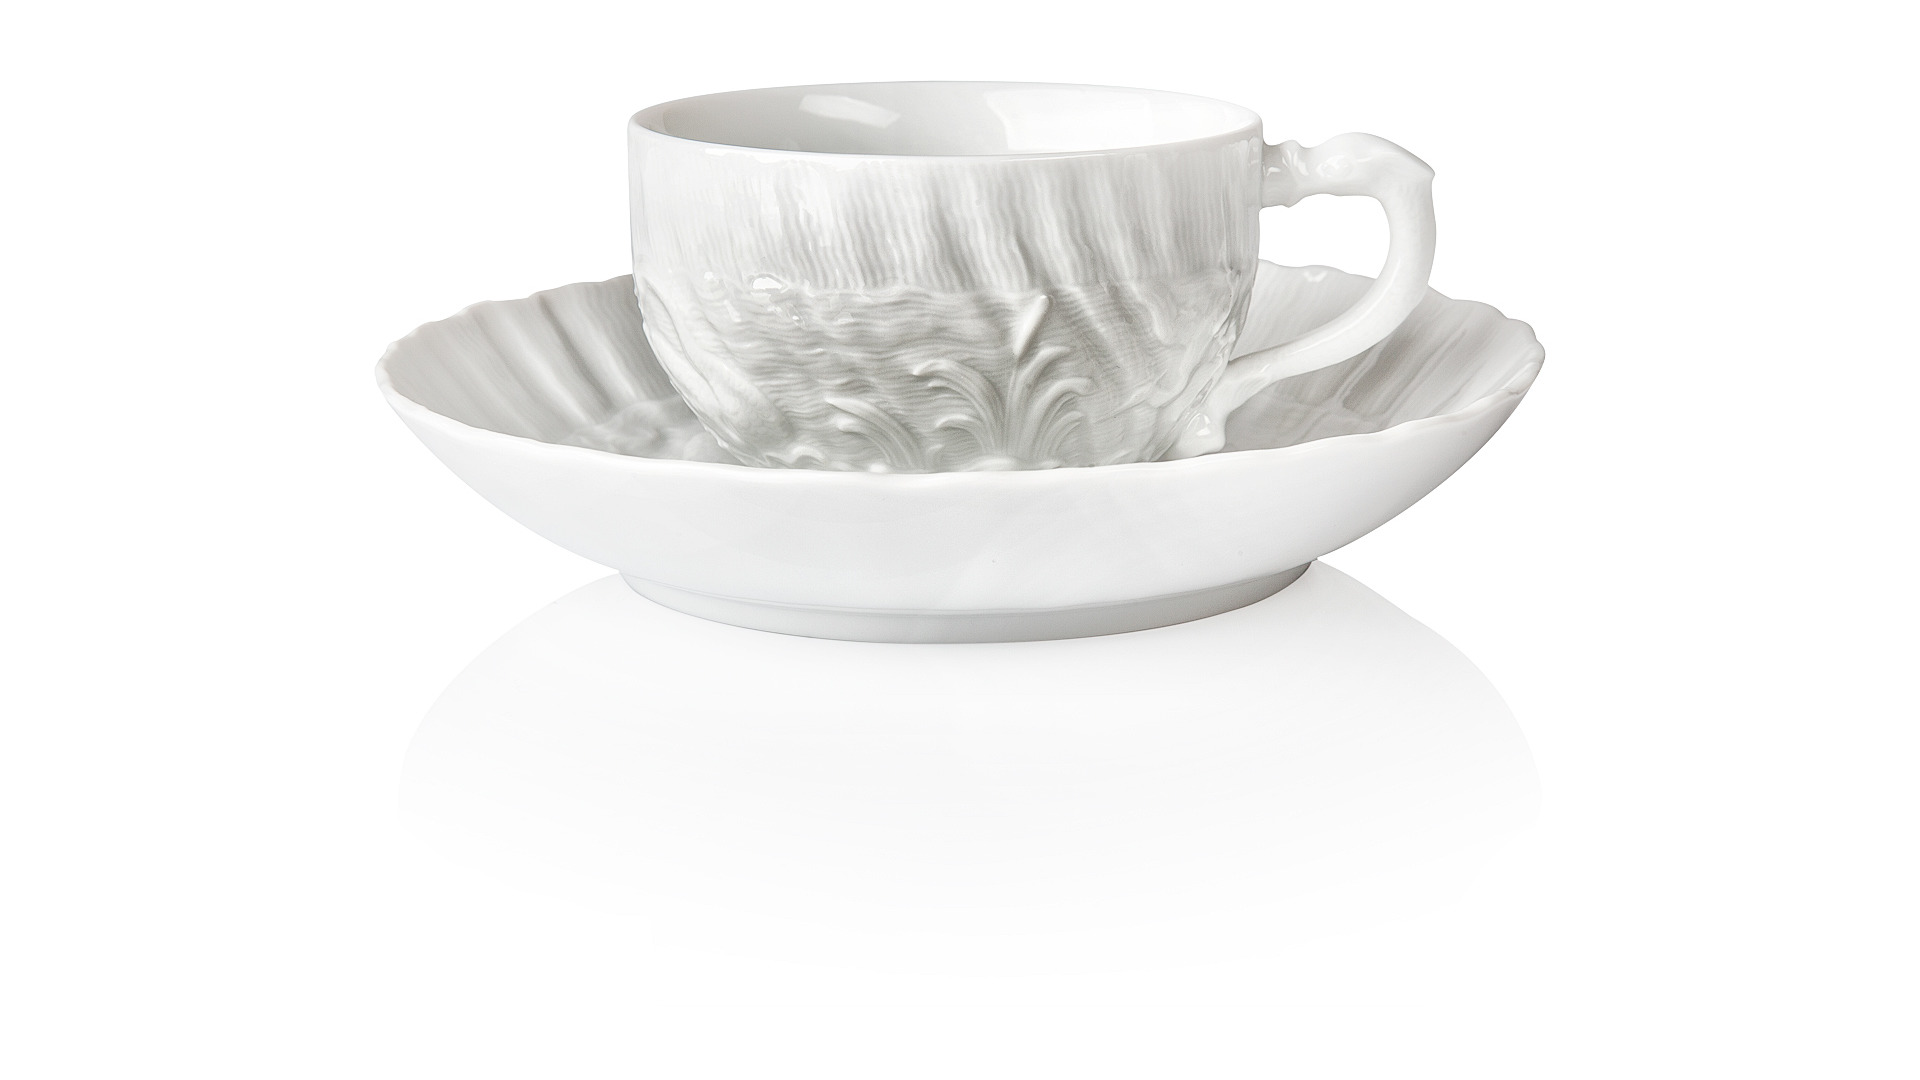 Сервиз чайный Meissen Лебединый сервиз, белый рельеф  на 6 персон 21 предмет, фарфор